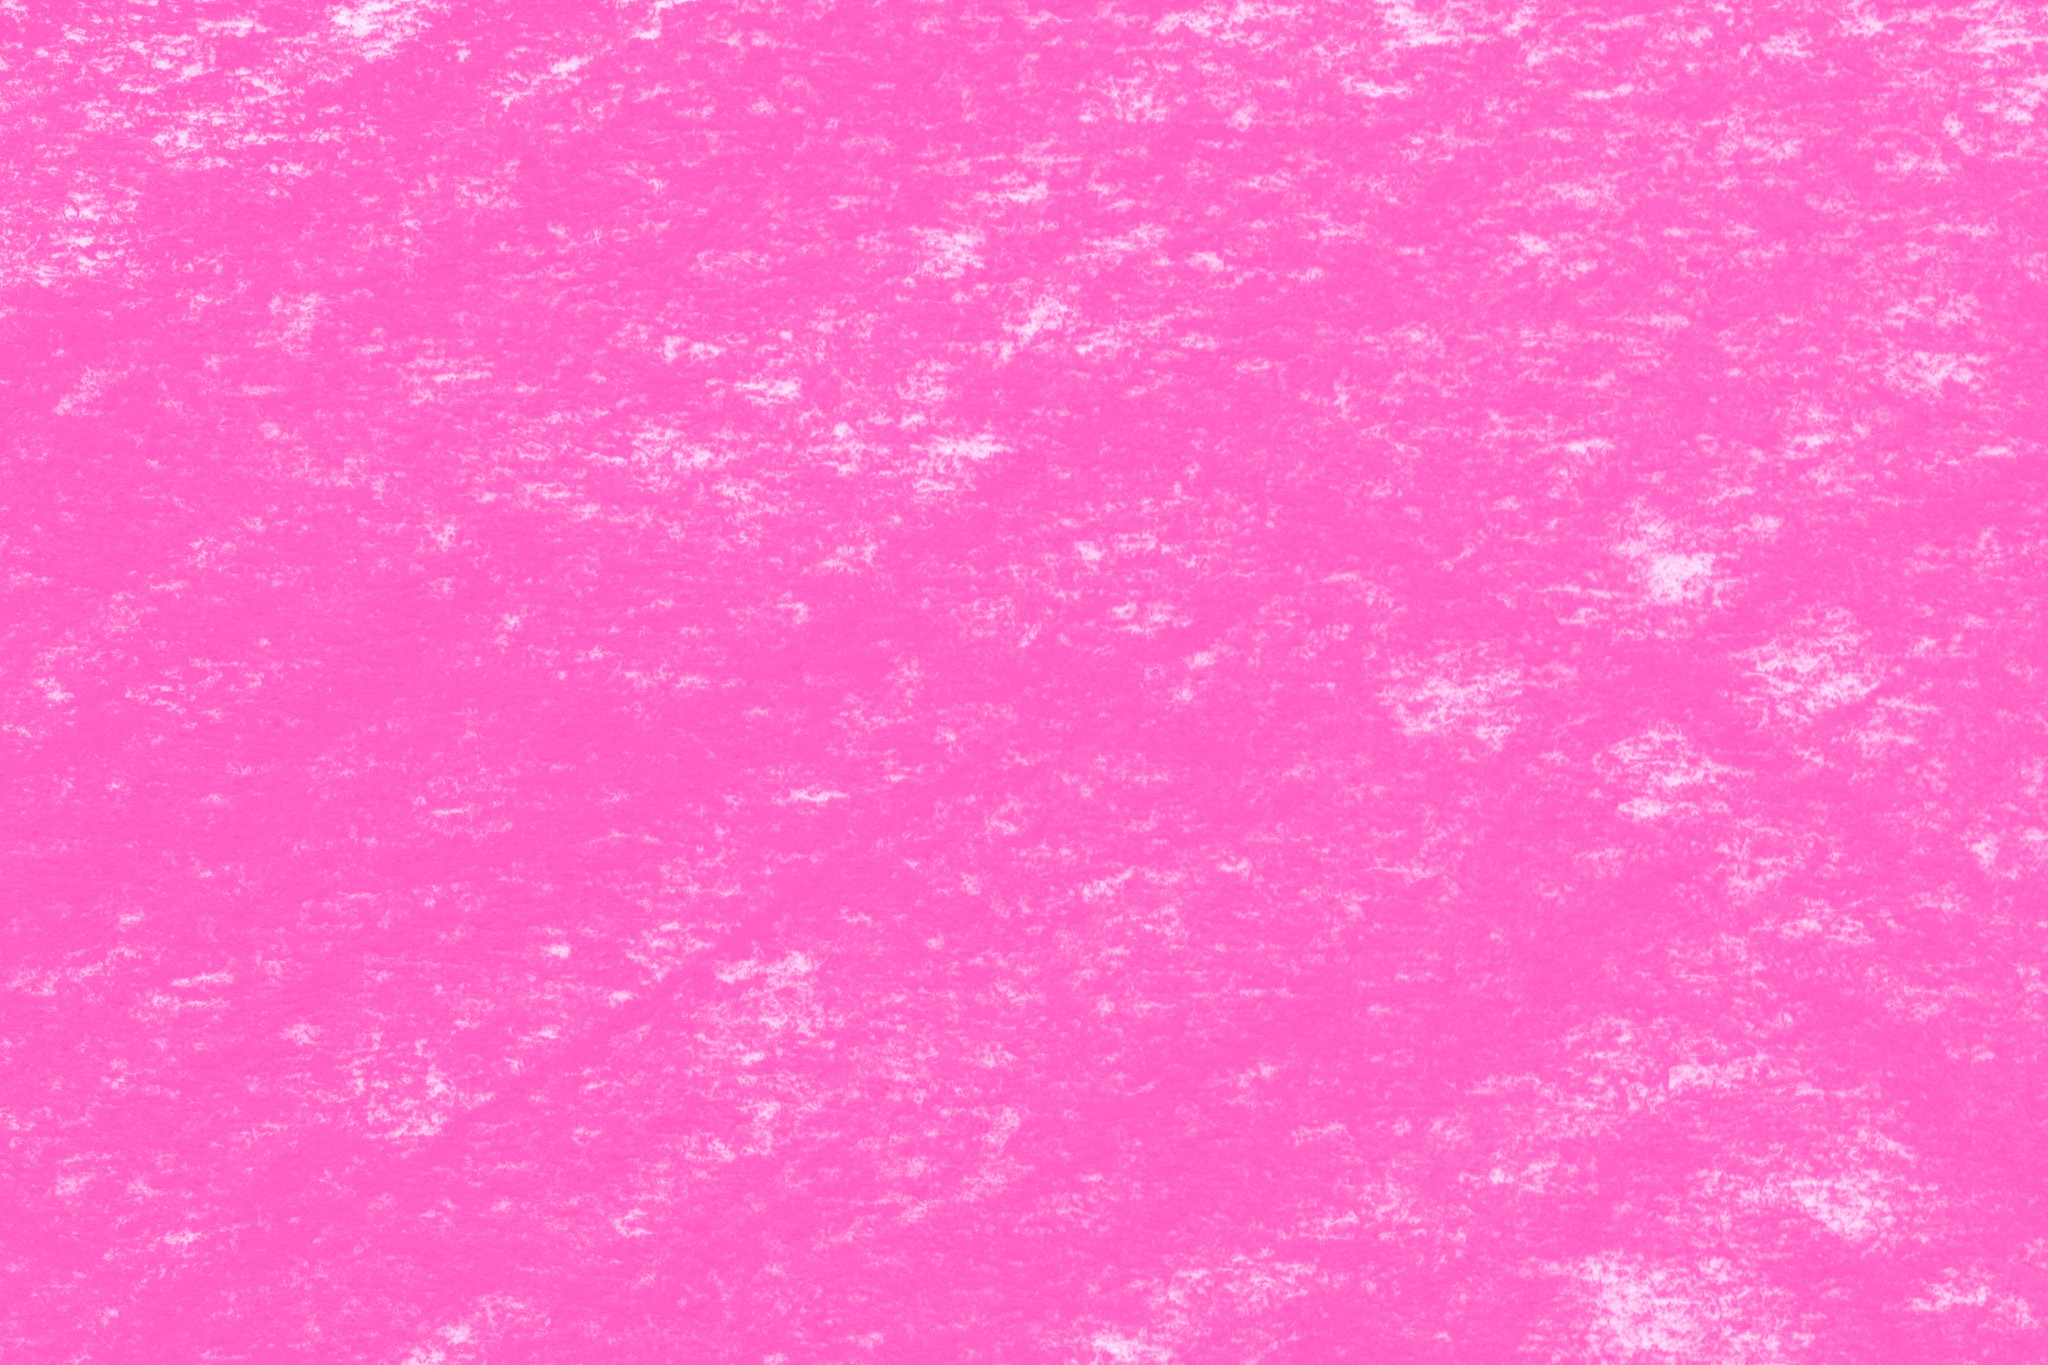 無地のピンク色のシンプル壁紙 の画像素材を無料ダウンロード 1 フリー素材 Beiz Images